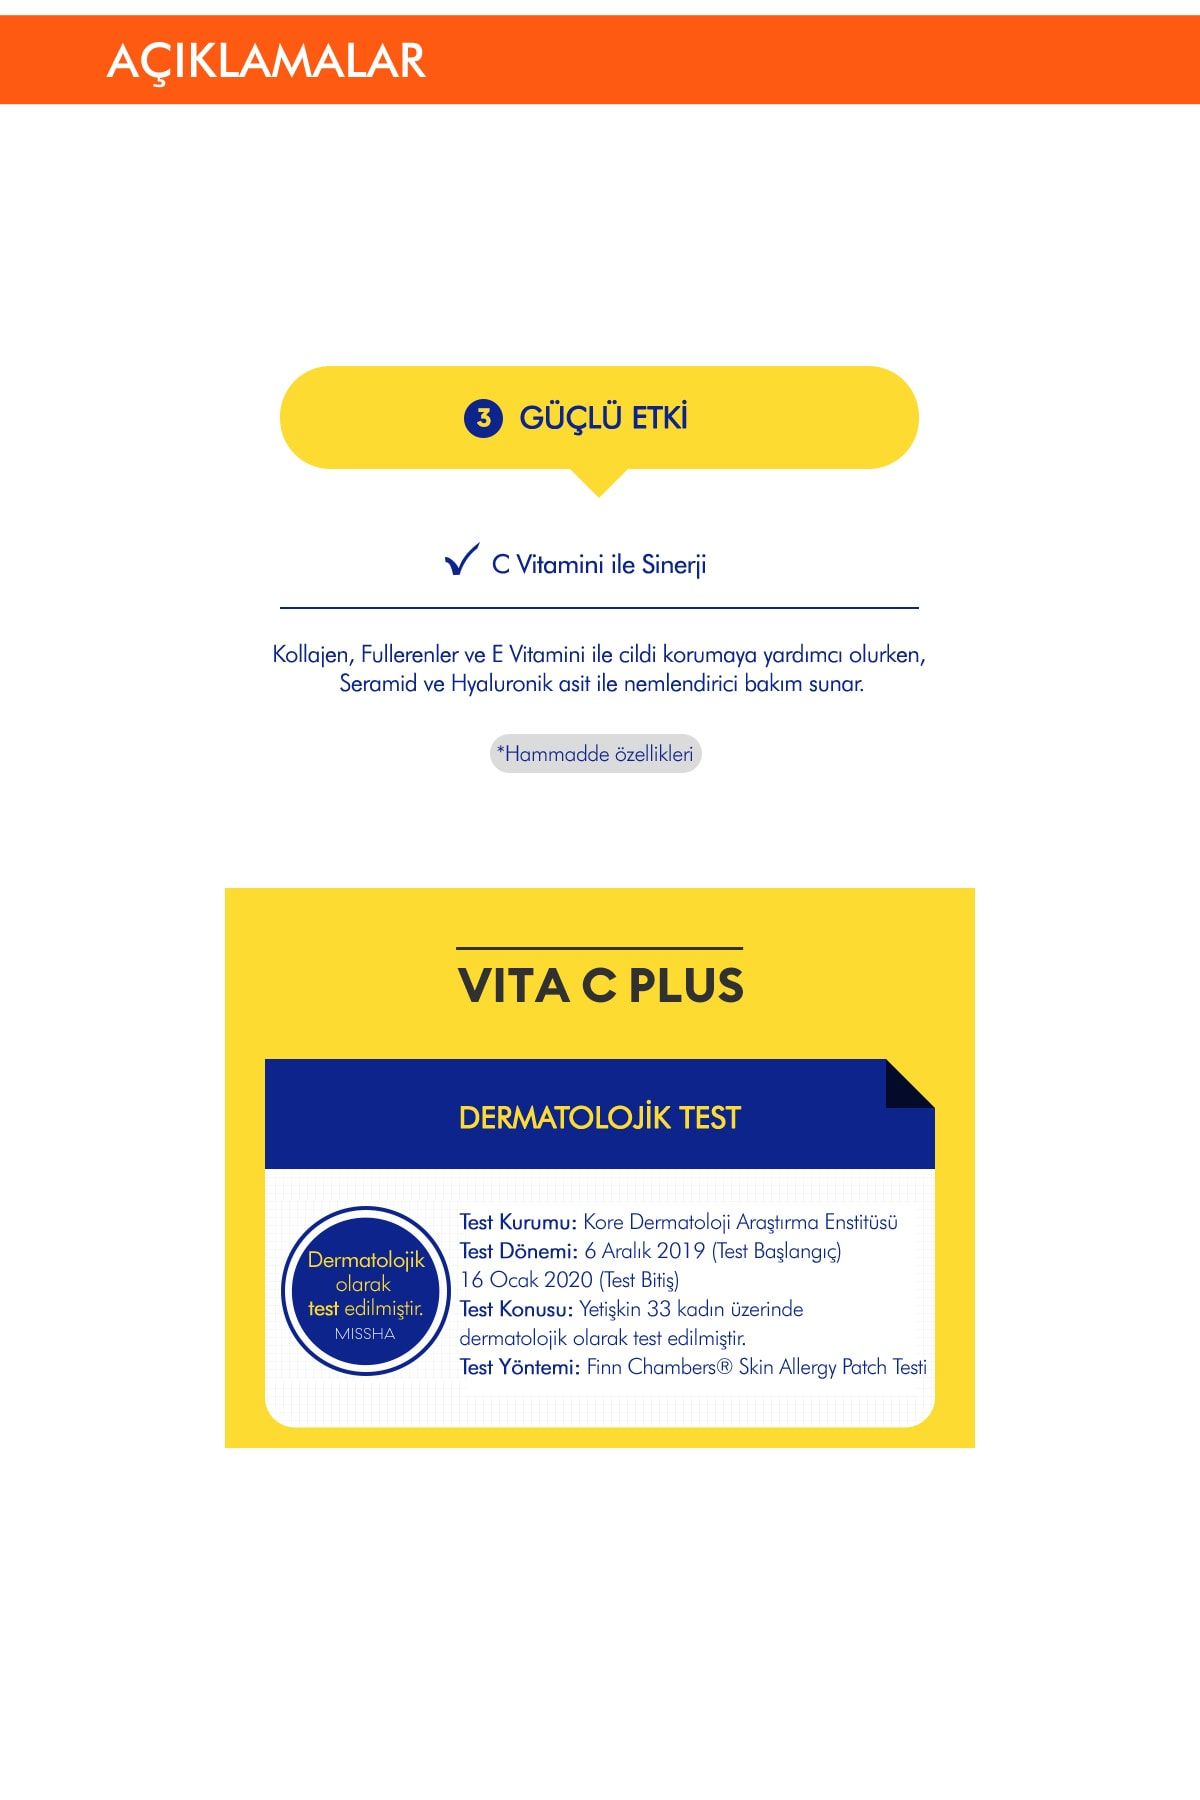 فوم پاک کننده ویتا سی پلاس Vita C Plus با ویتامینC و ضد لک و جوش ۱۲۰میل میشا Missha